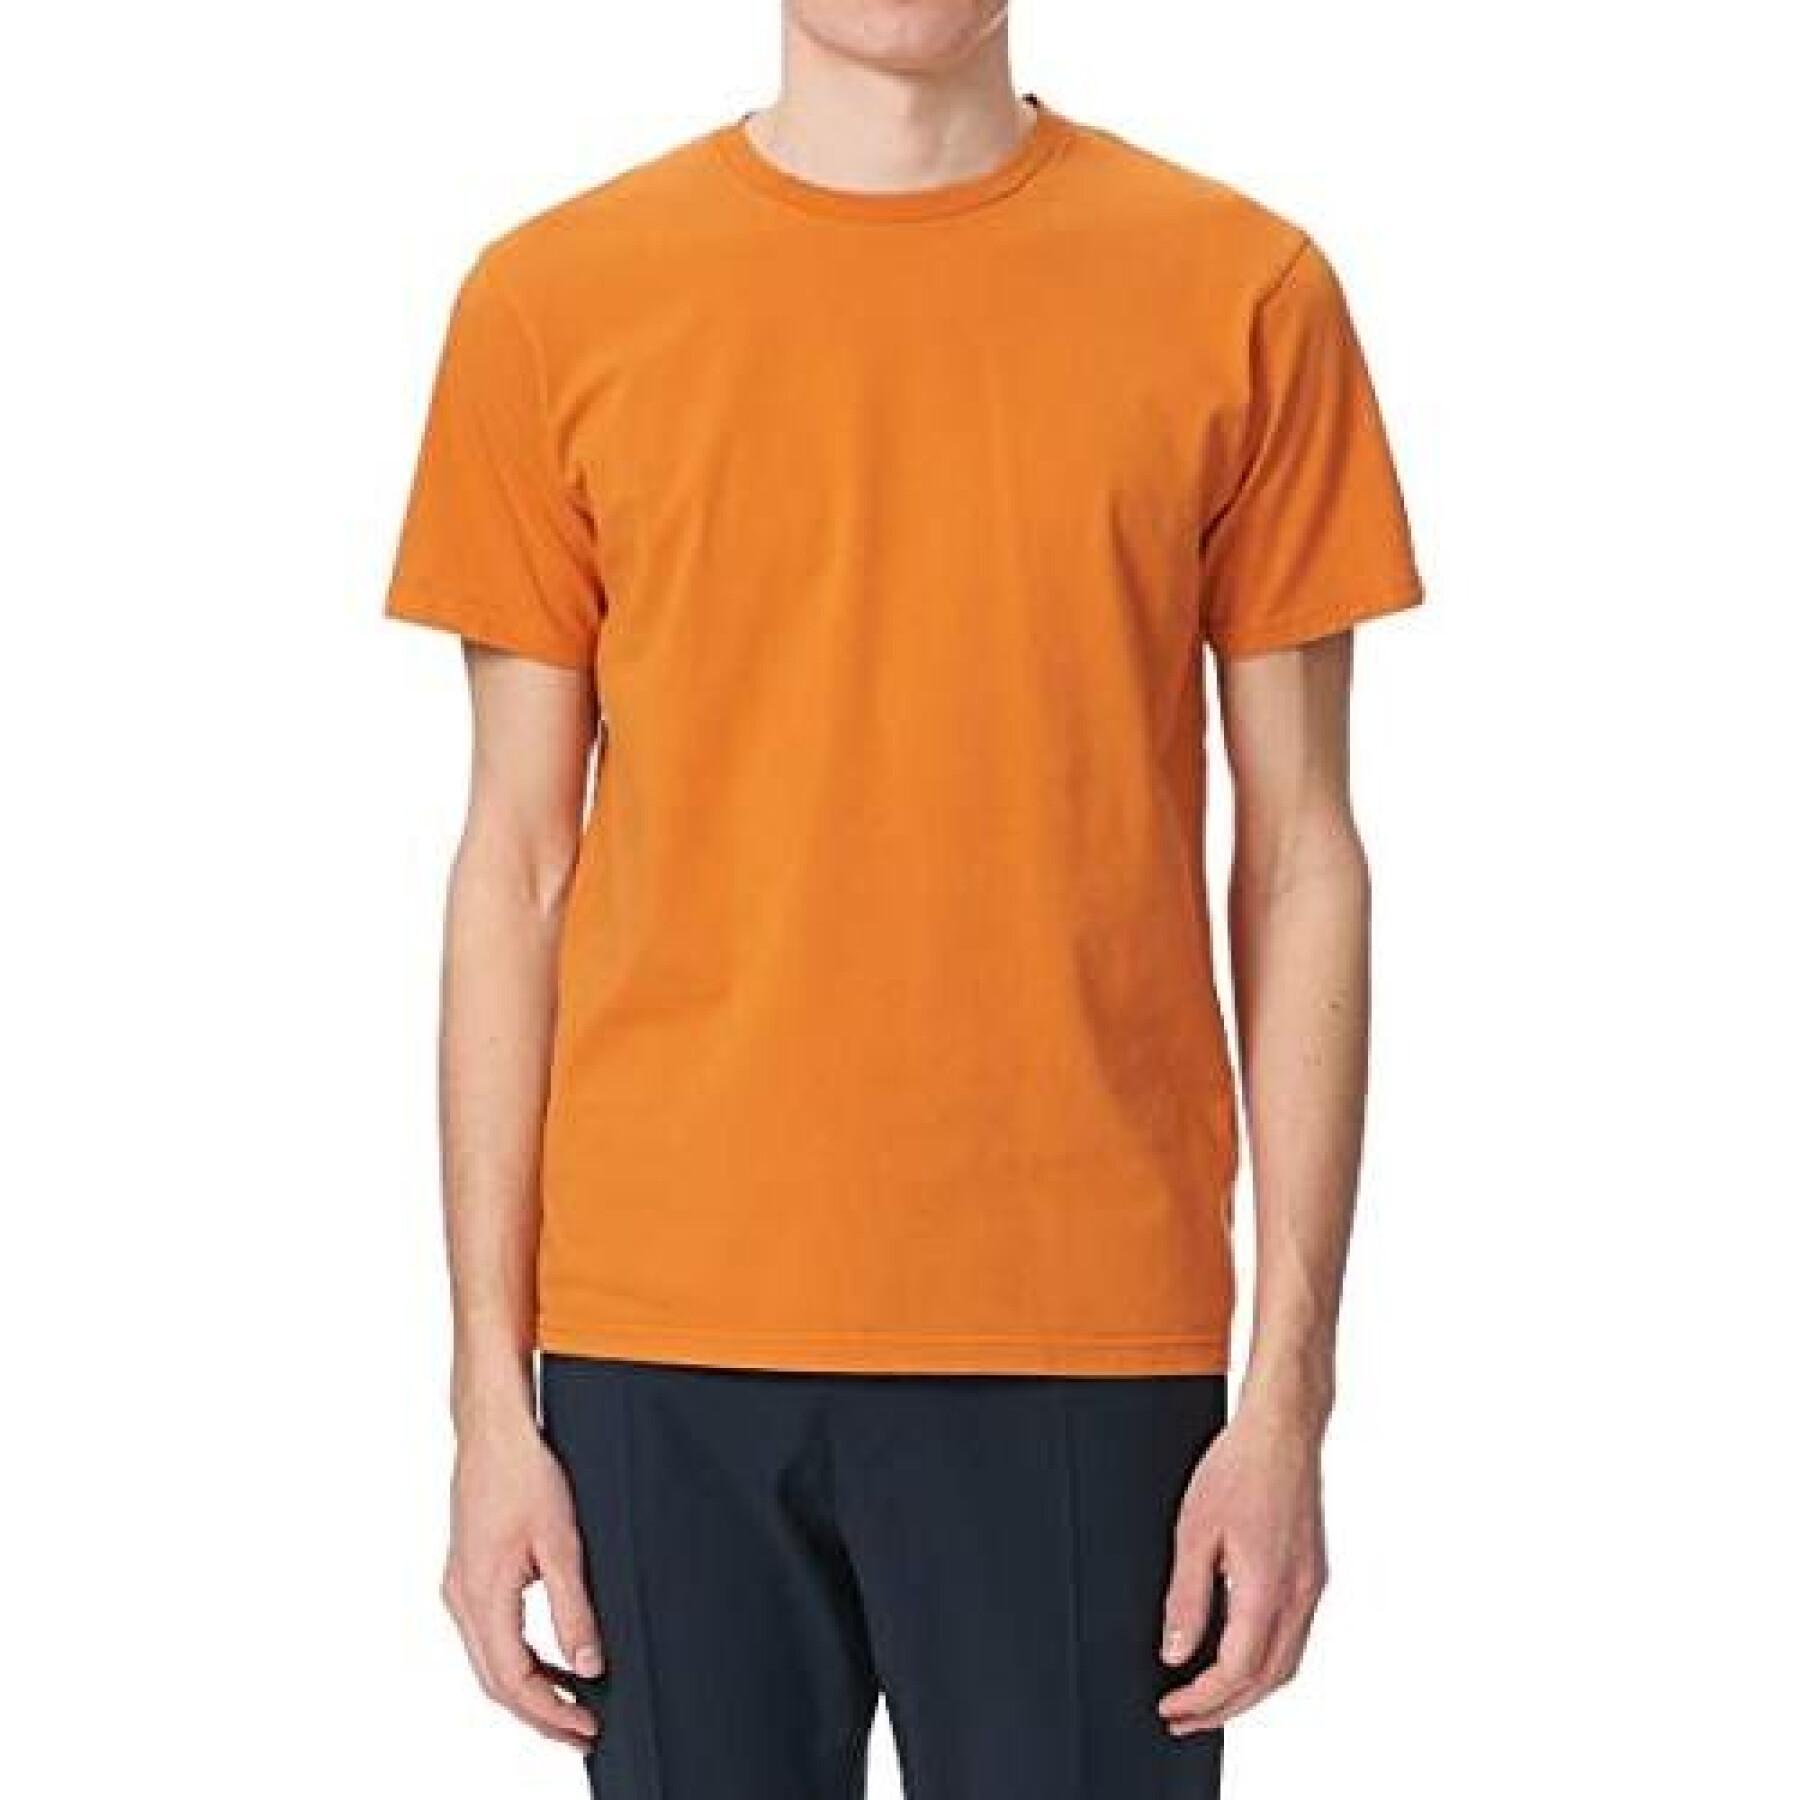 Camiseta Colorful Standard Burned naranja